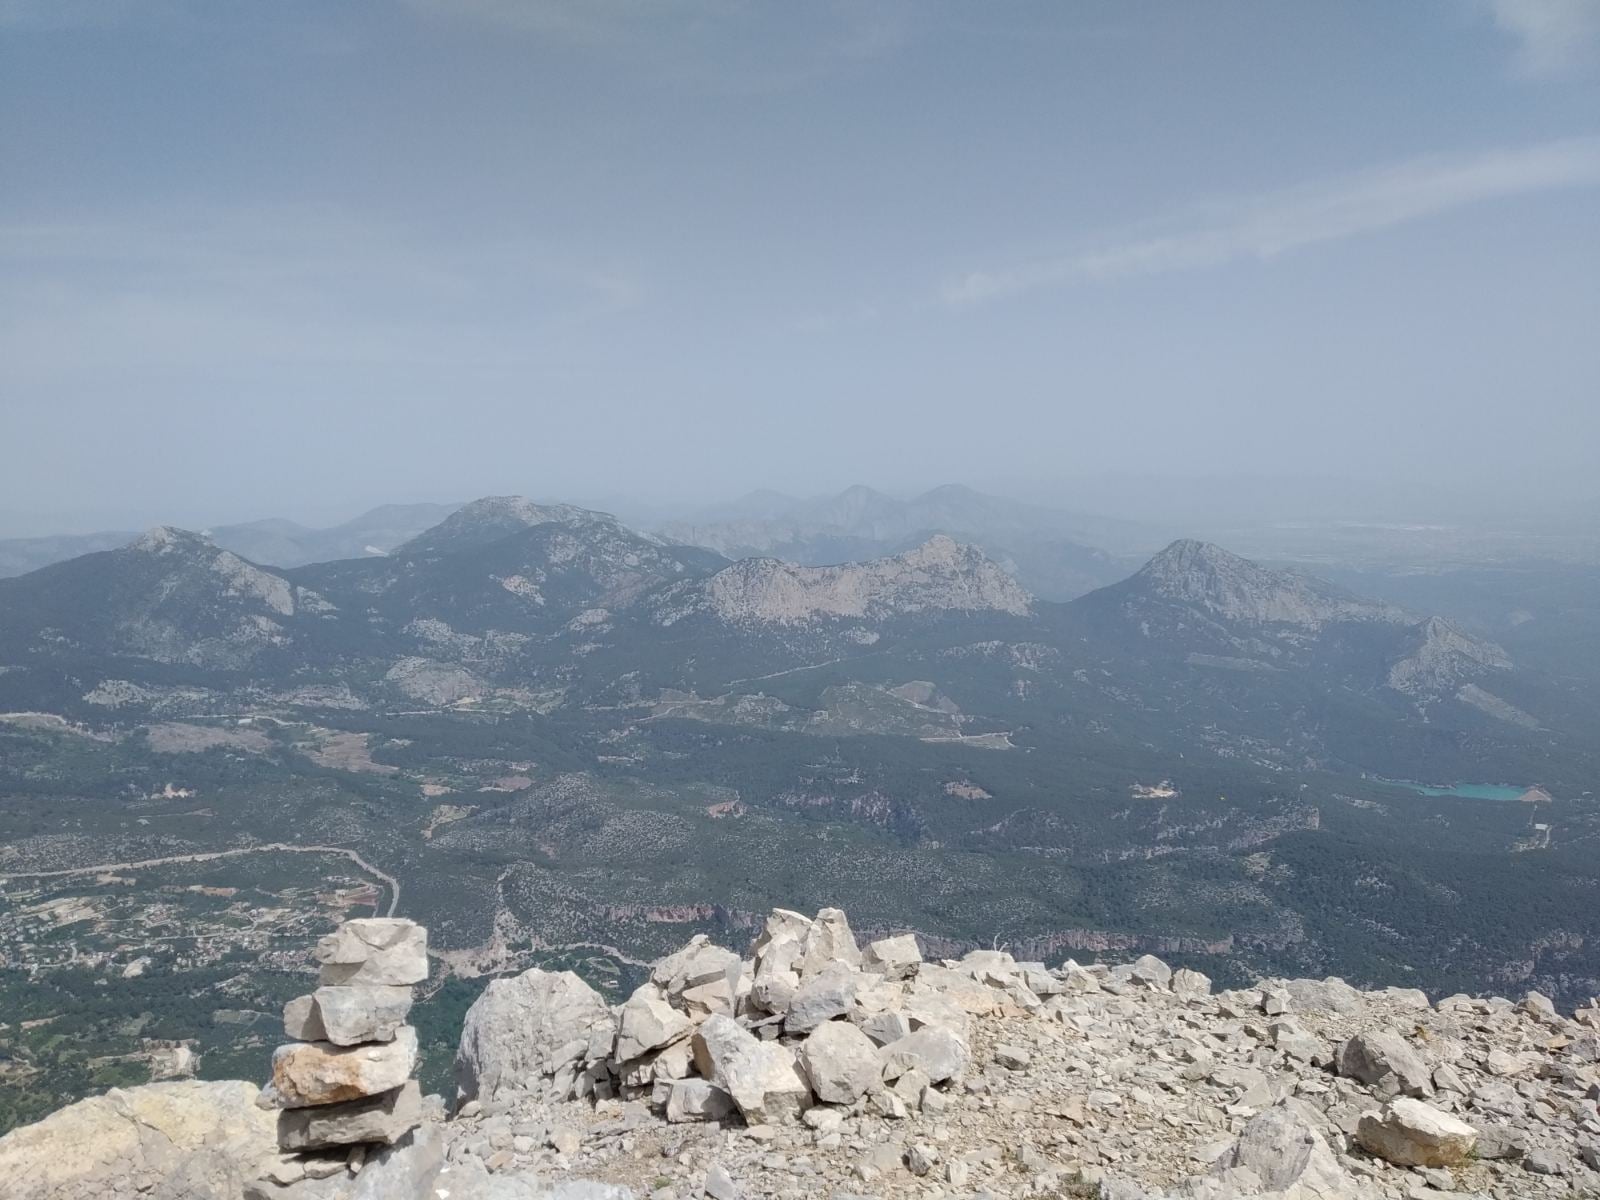 на вершине горы Геиксивриси (Geyik Sivrisi высотой 1715 метров. Одно из последних фото с телефона Яны